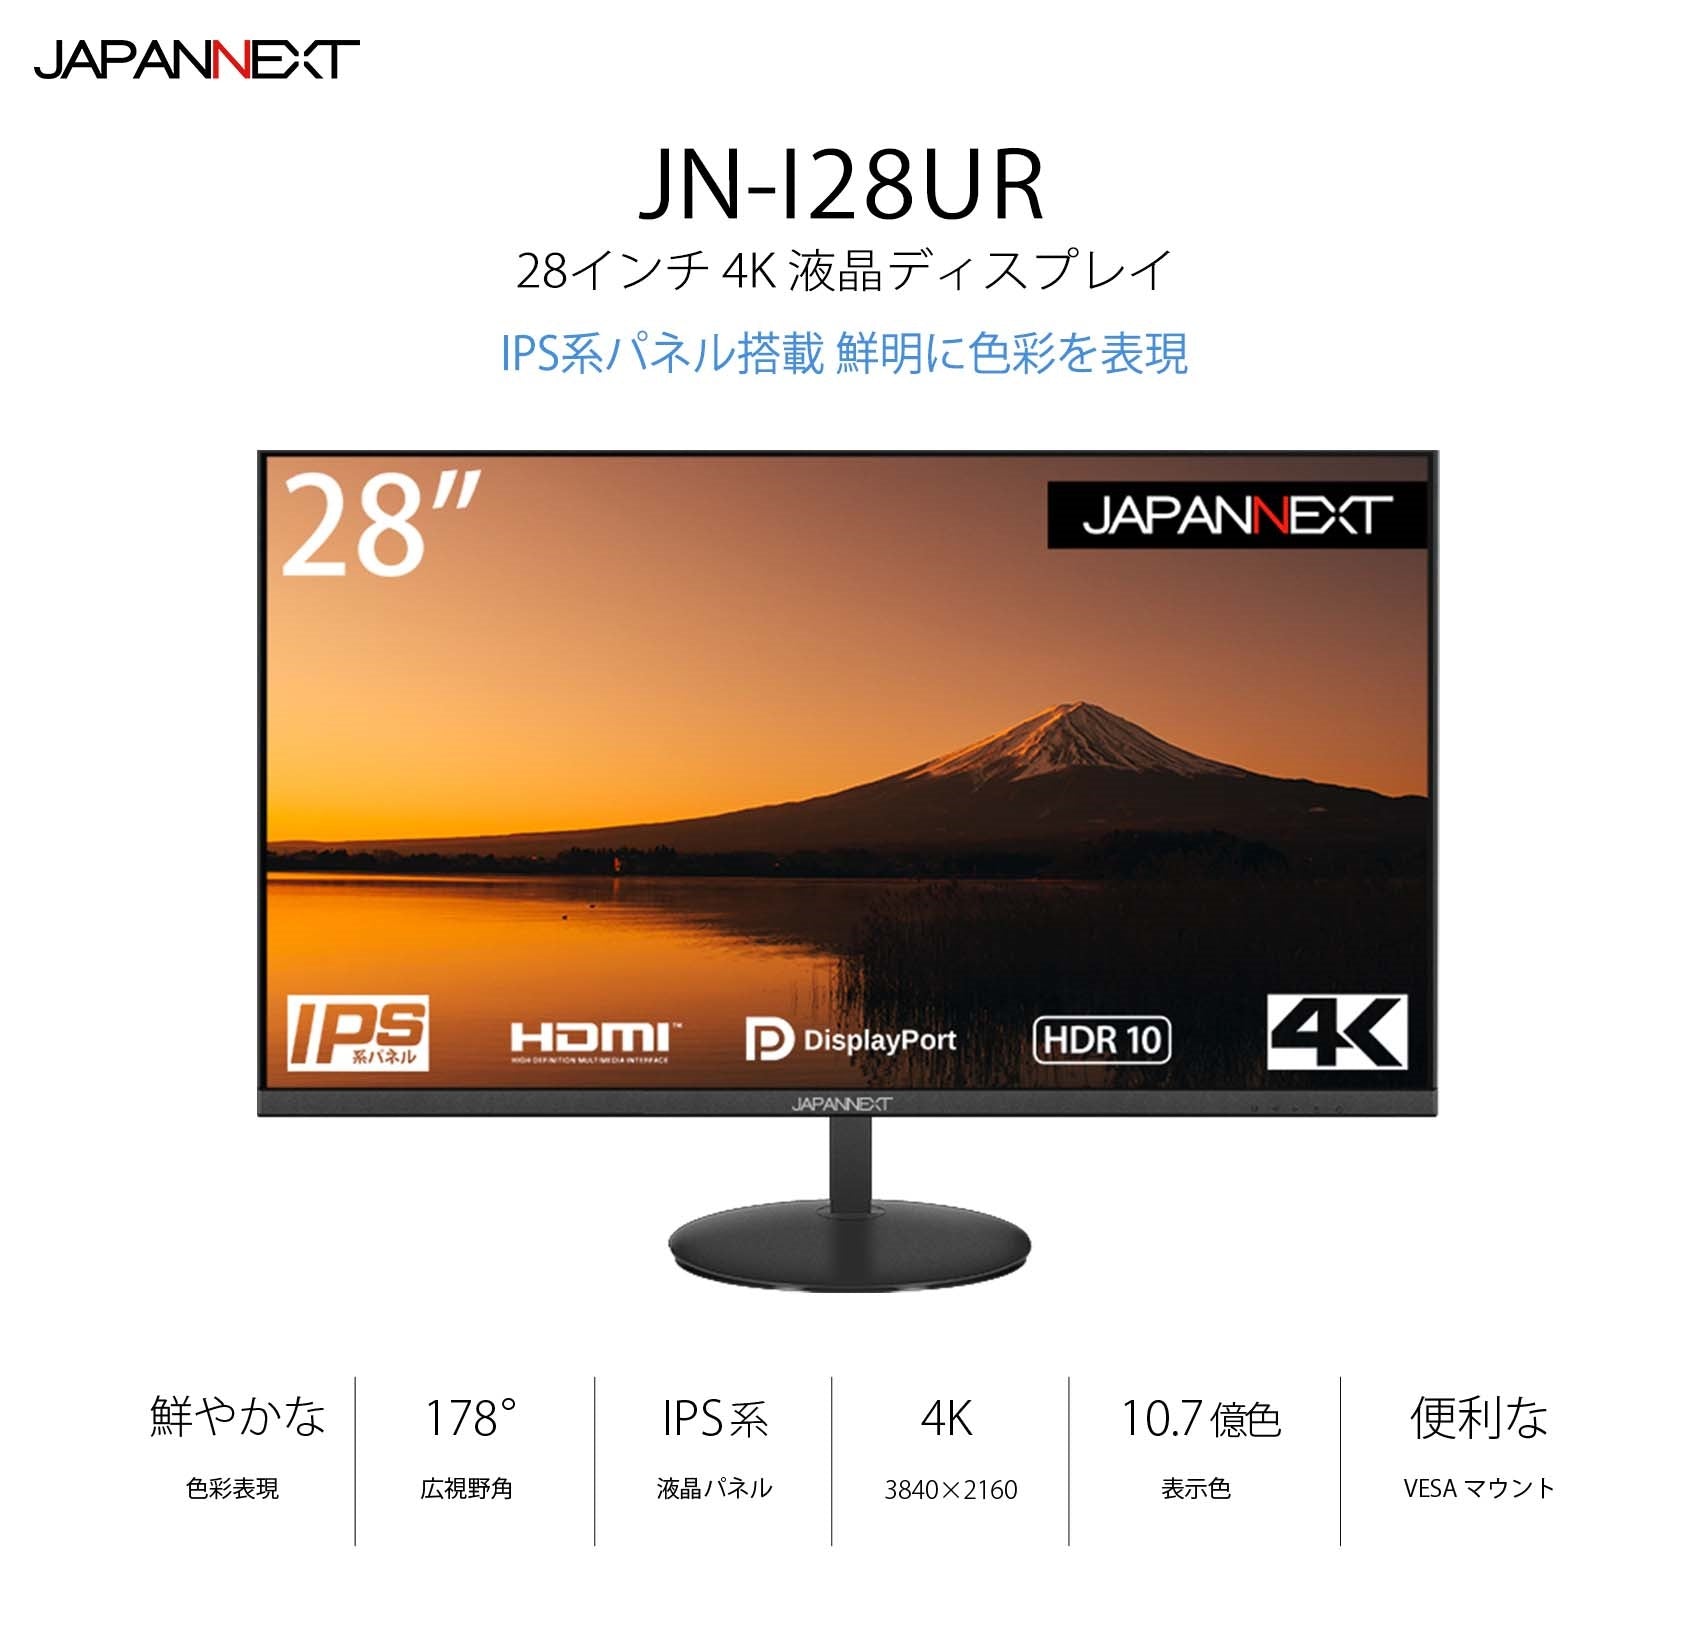 【Amazon.co.jp限定】JAPANNEXT 28型 IPS 4K液晶モニター